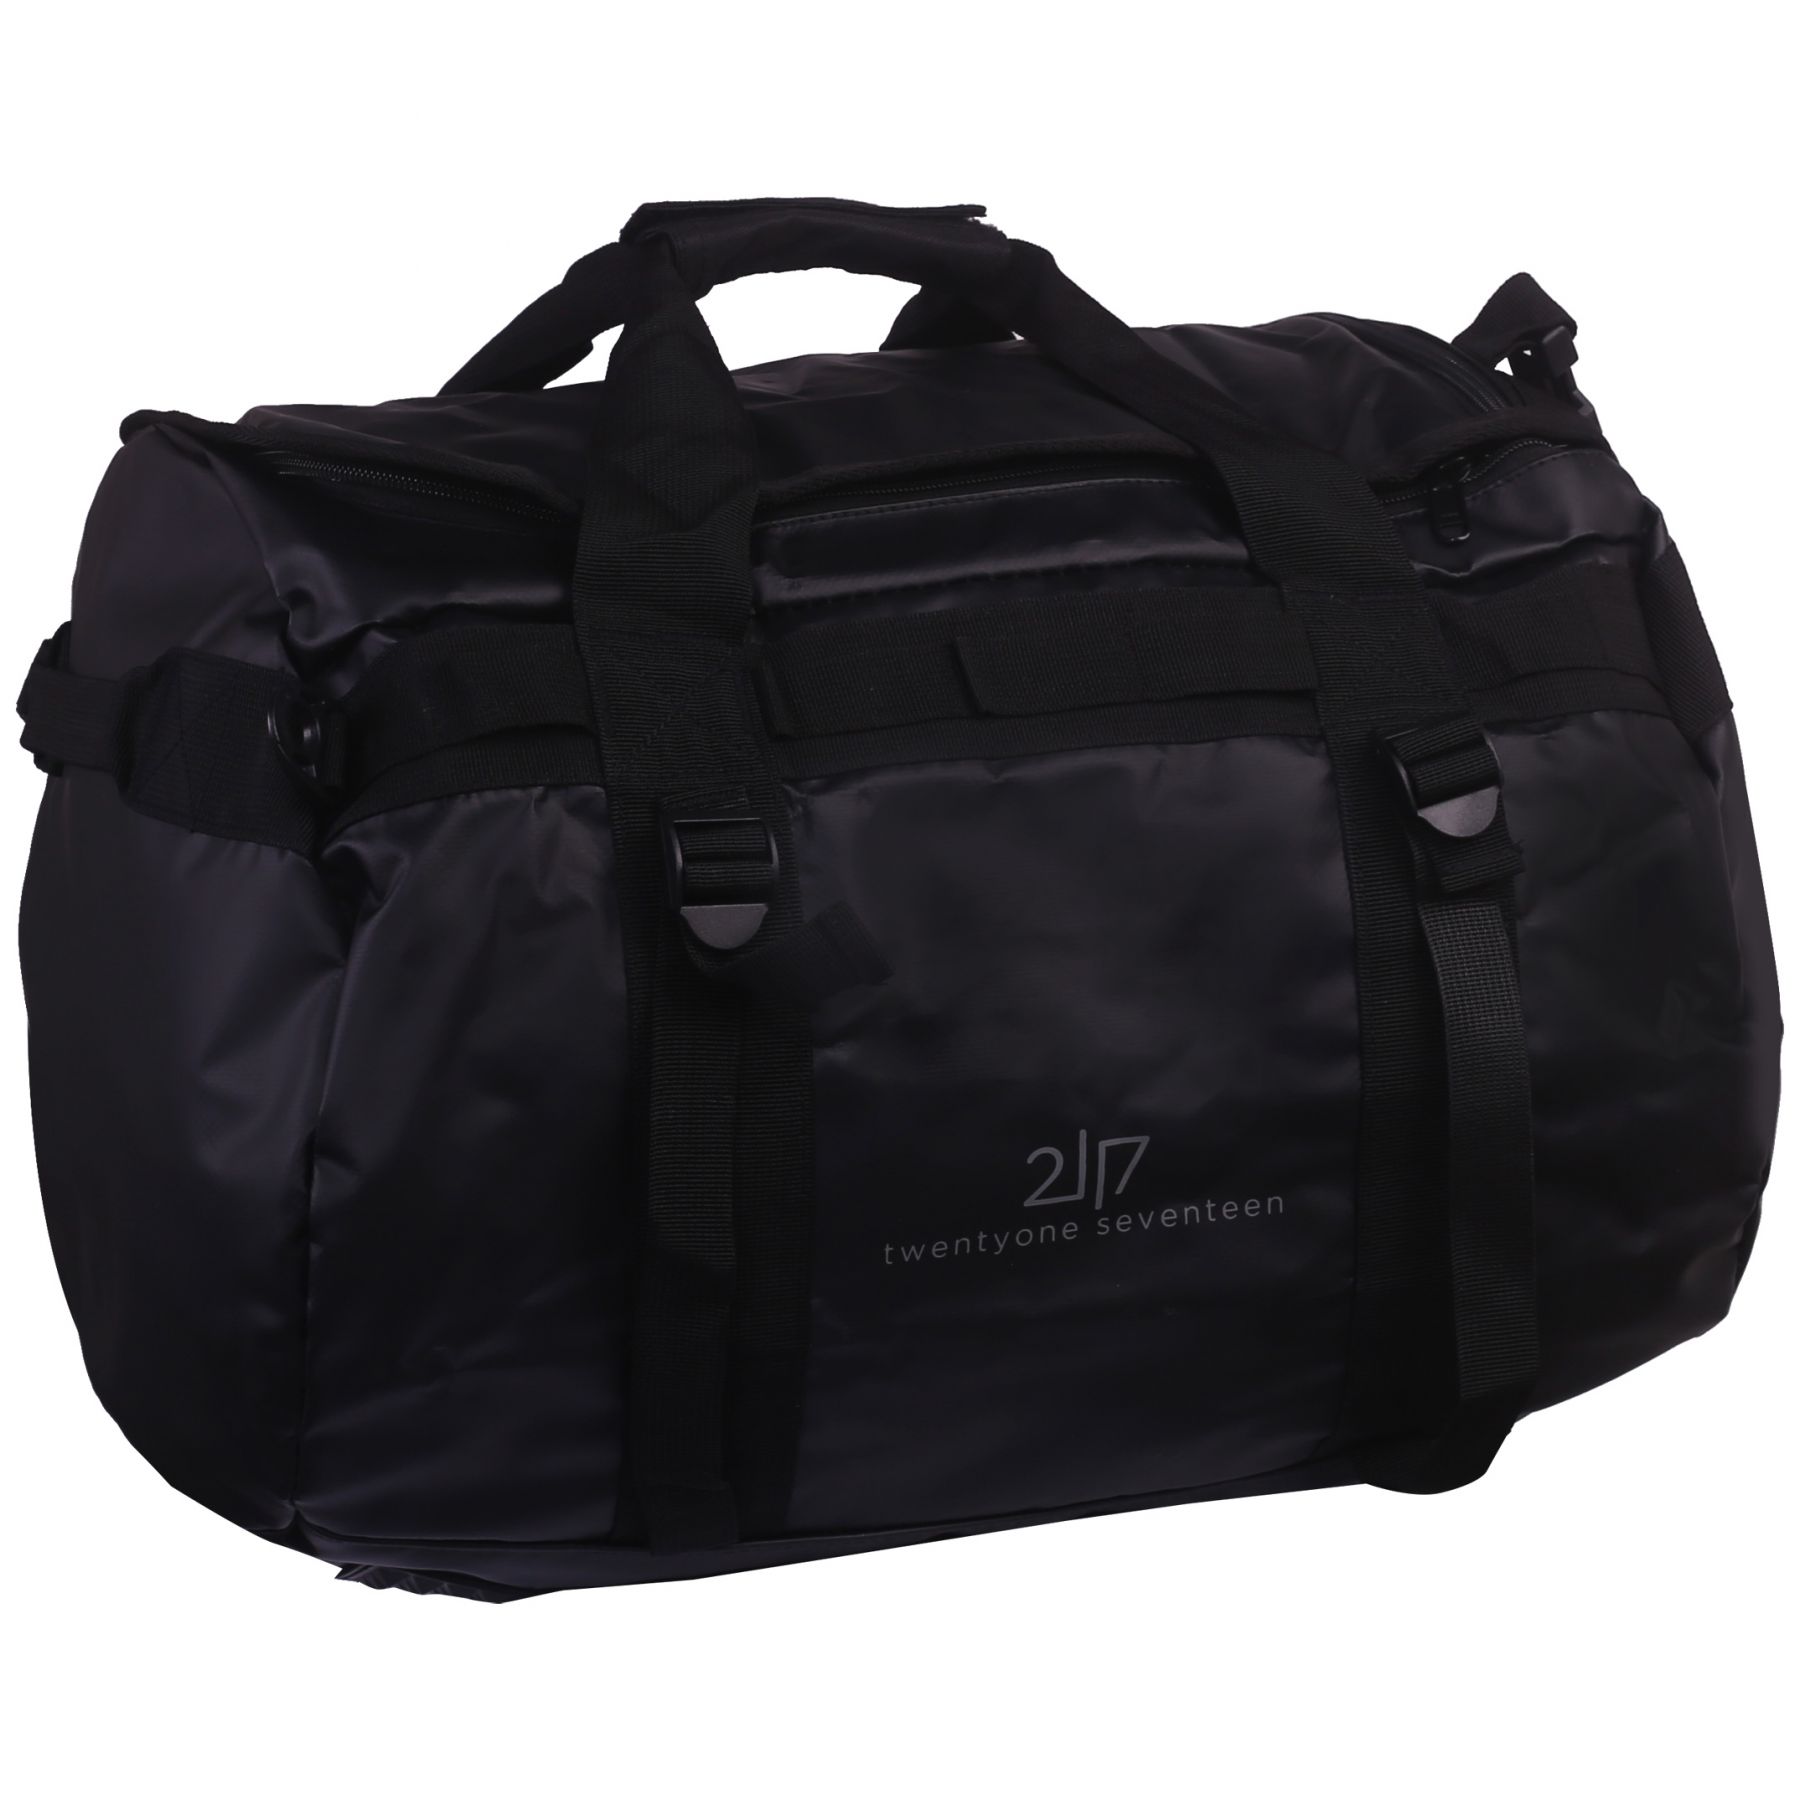 Billede af 2117 of Sweden Tarpaulin duffel bag, 60L, sort